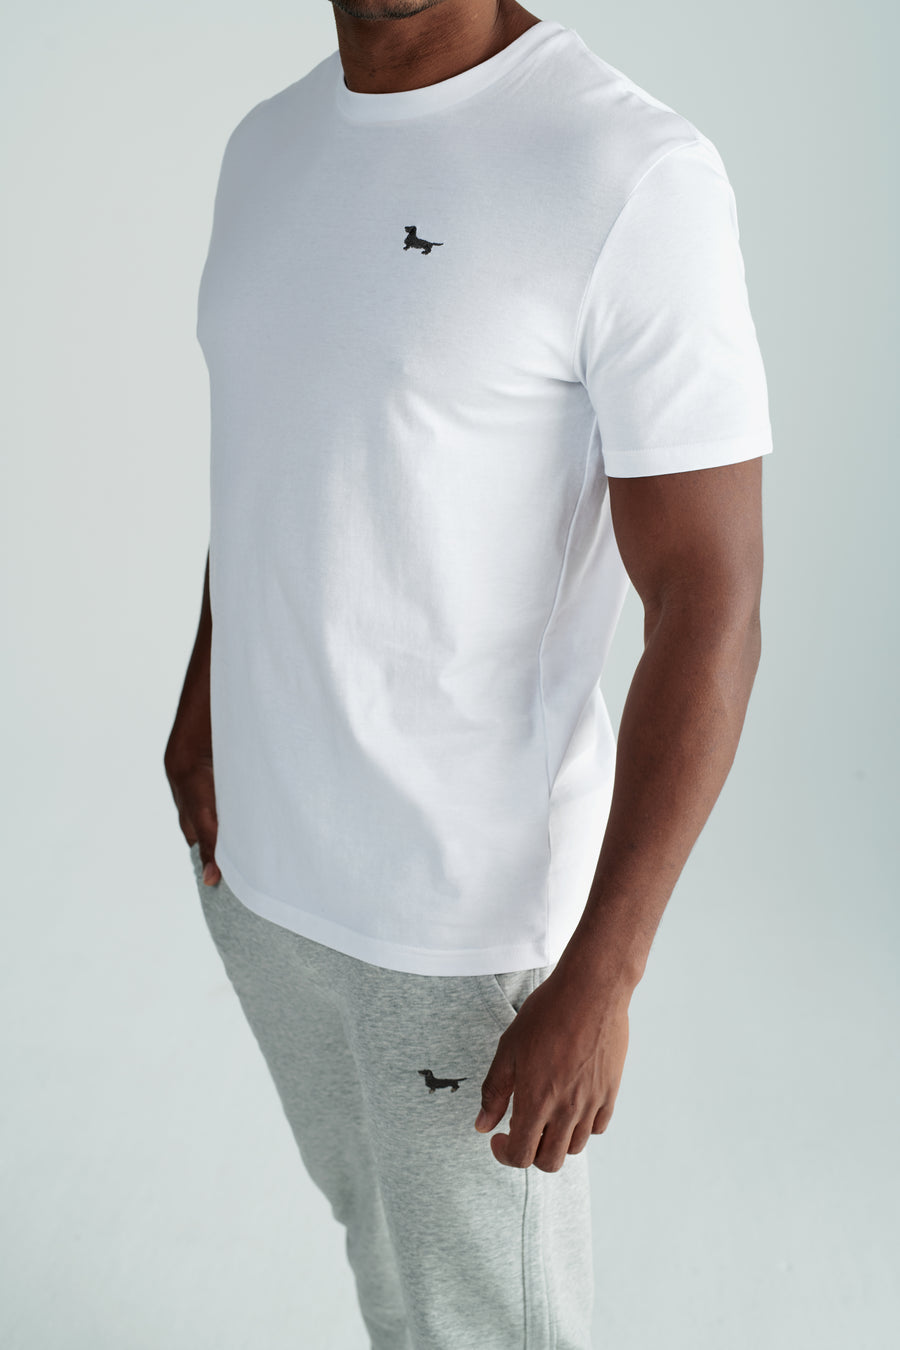 Nachhaltiges Unisex T-Shirt in Weiss mit Rauhaardackel Motiv